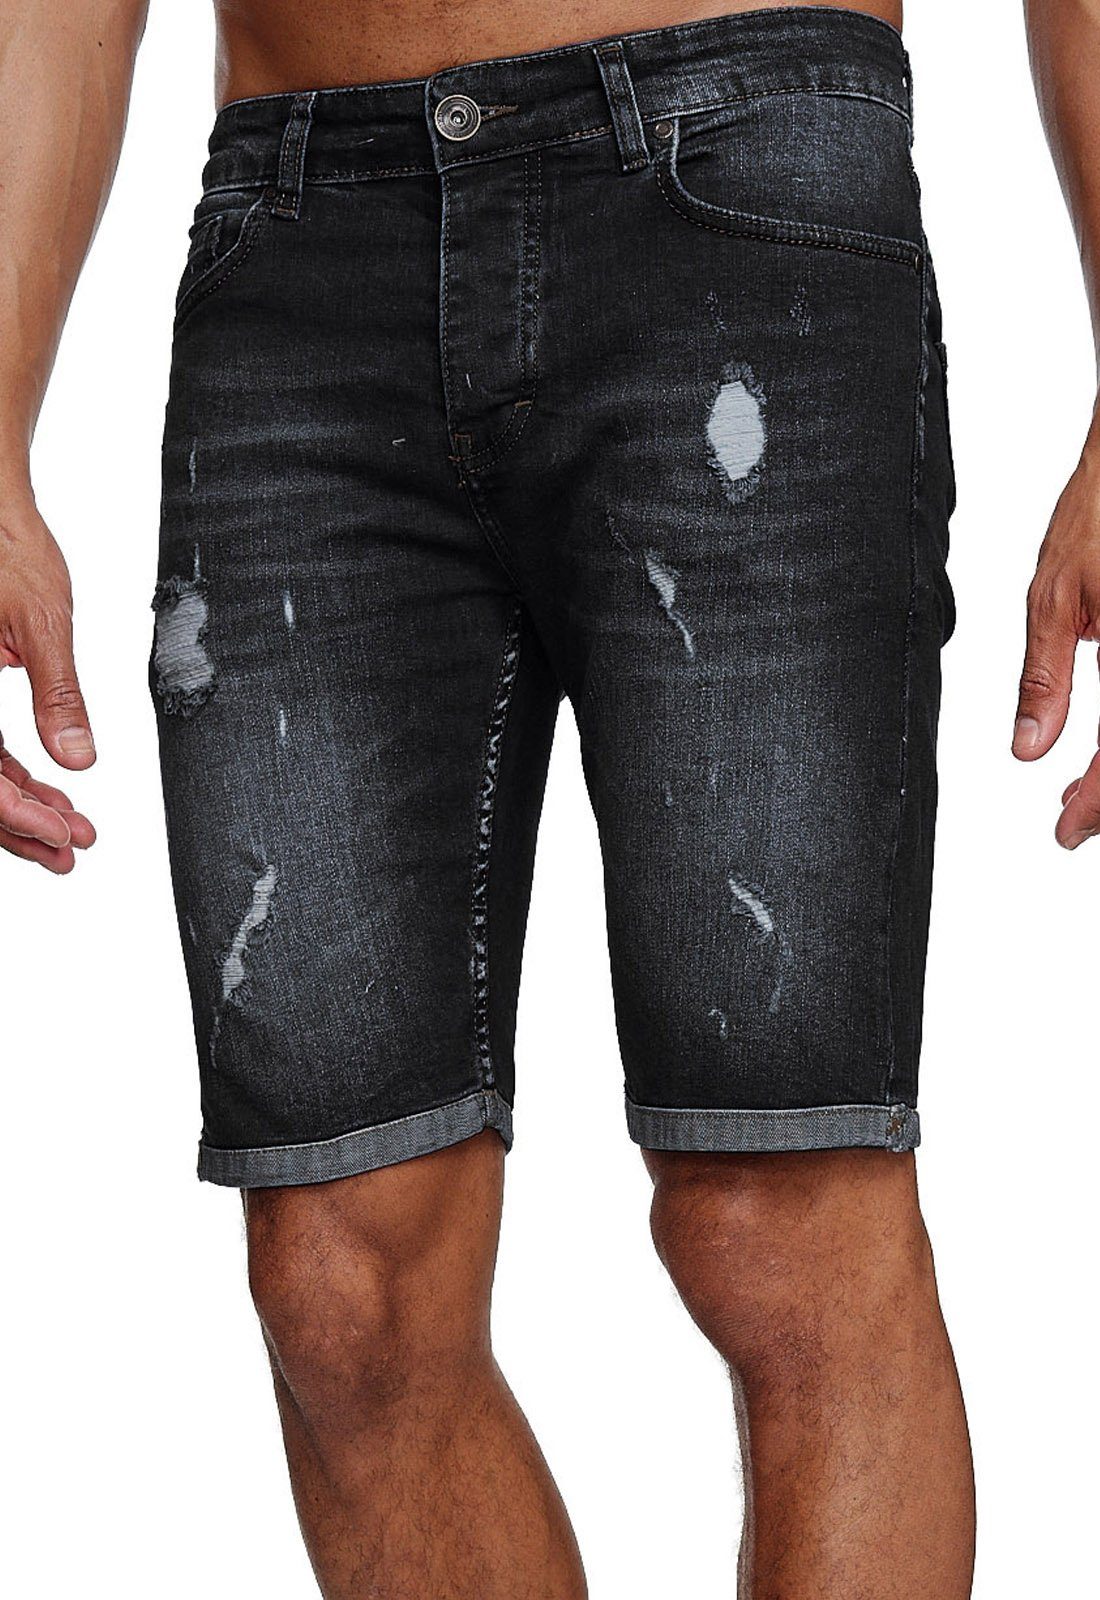 Jeans l Jeans-Hose Herren Shorts Hosen Sommer Stretch Used Destroyed Jeansshorts Kurze Destroyed Look Jeansbermudas Reslad schwarz Reslad